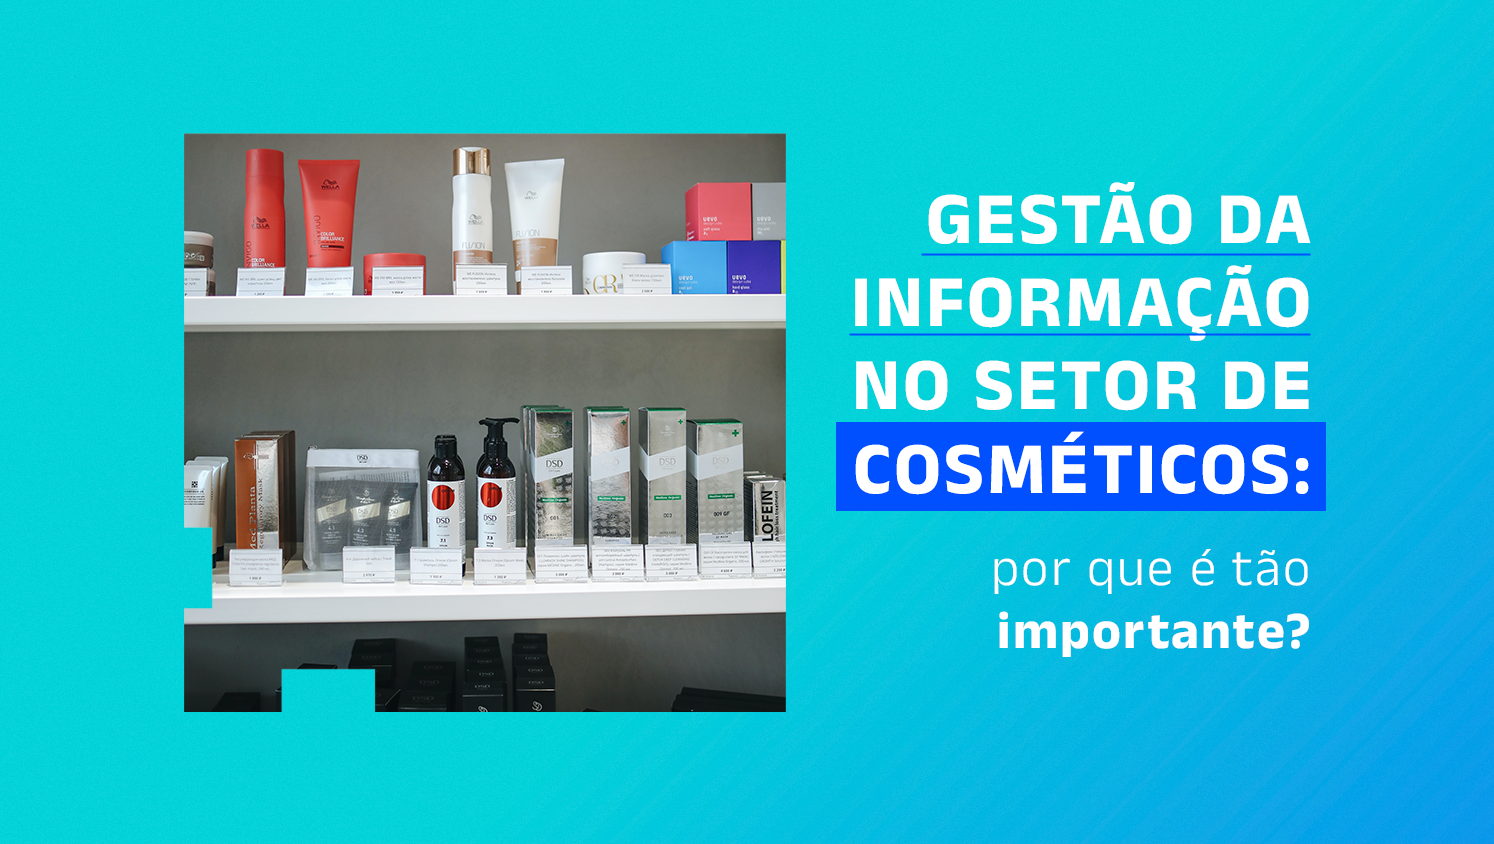 Prateleiras com cósmeticos expostos; e os escritos "Gestão da informação no setor de cosméticos: por que é tão importante?".